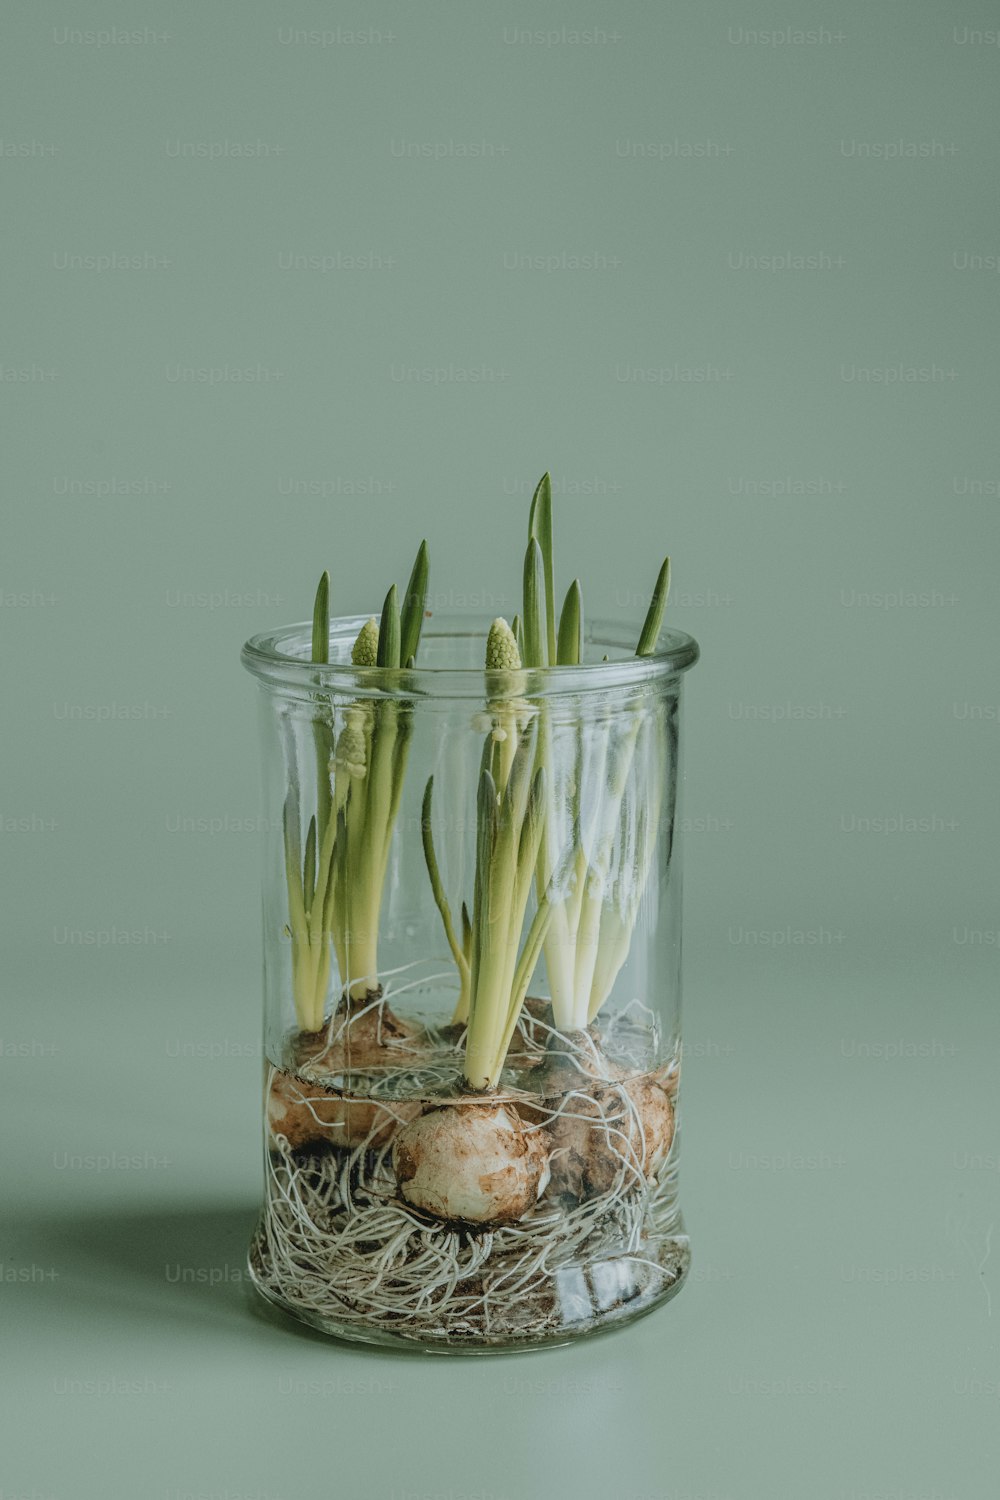 un barattolo di vetro con alcune piante al suo interno